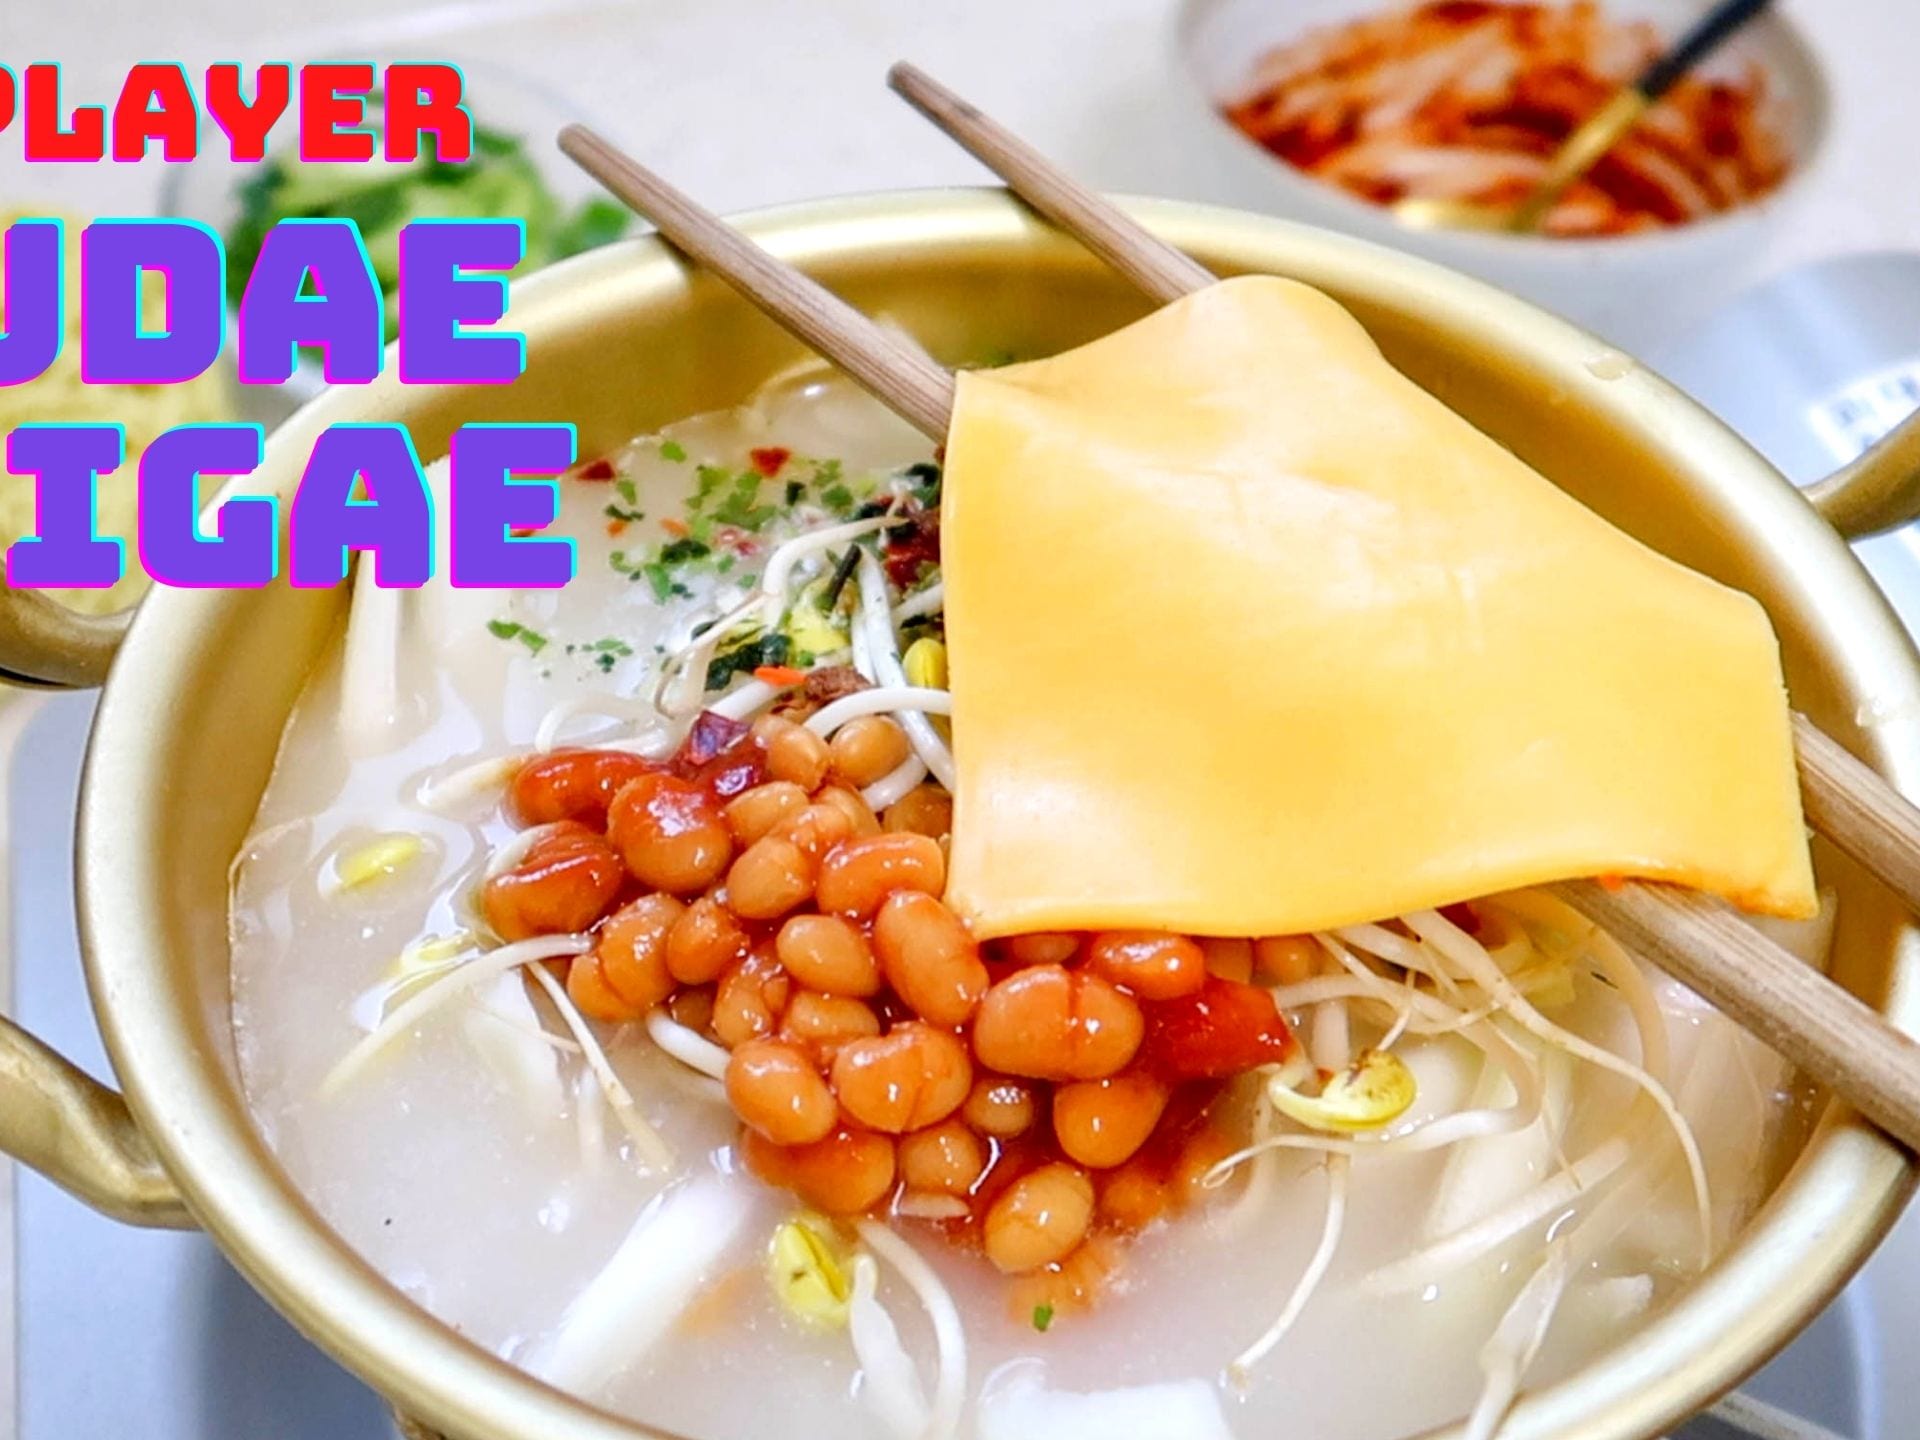 Korean Cookware – Gochujar Global